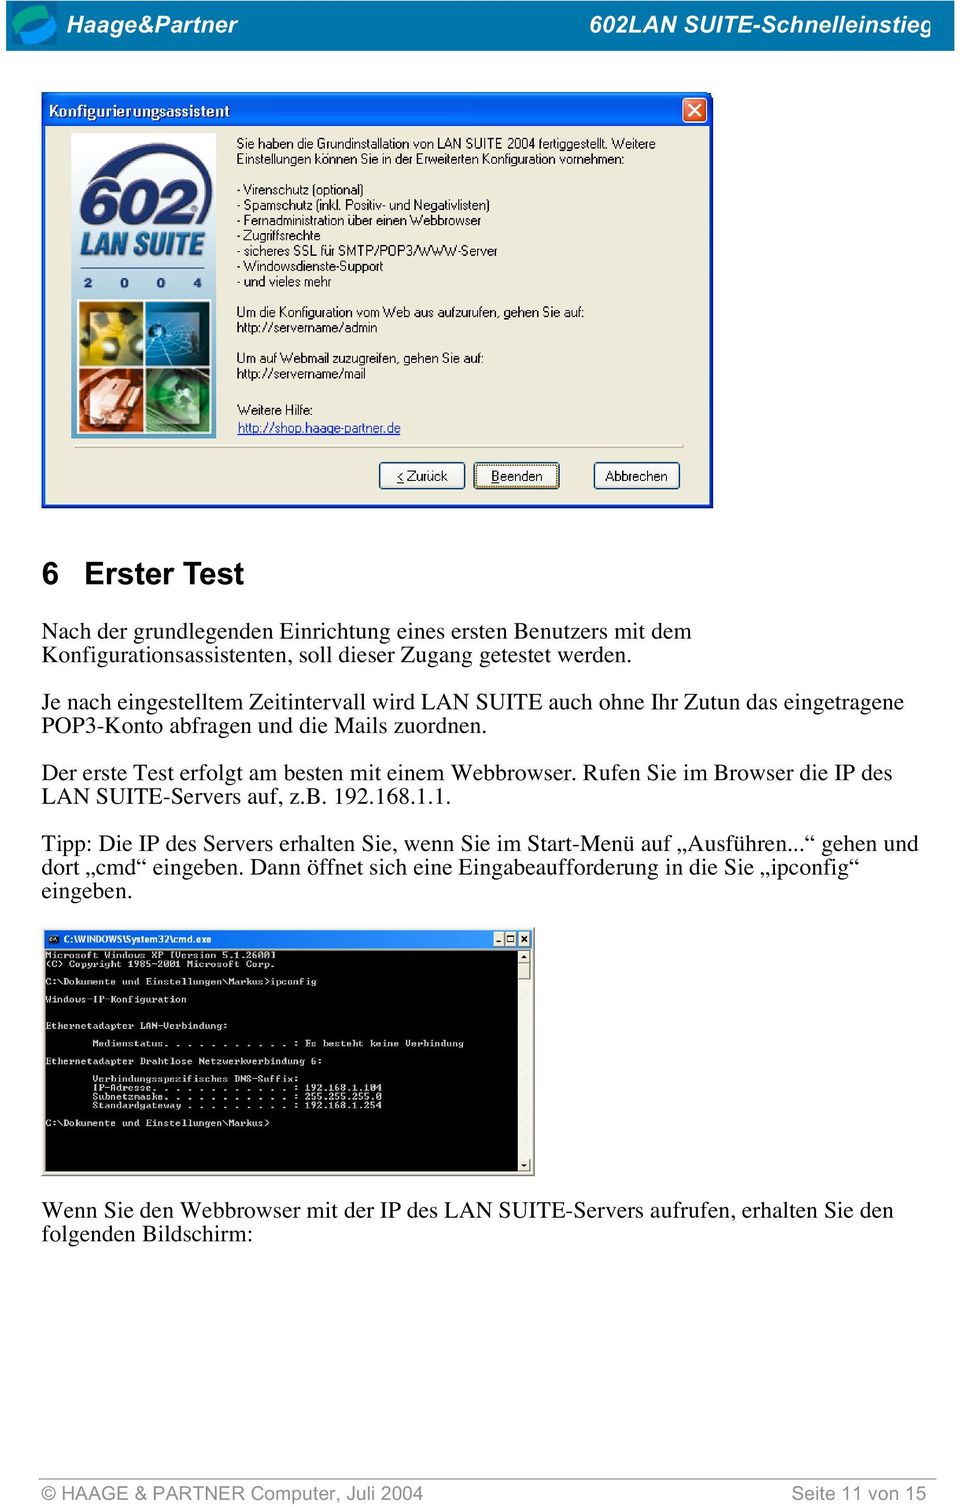 Der erste Test erfolgt am besten mit einem Webbrowser. Rufen Sie im Browser die IP des LAN SUITE-Servers auf, z.b. 19